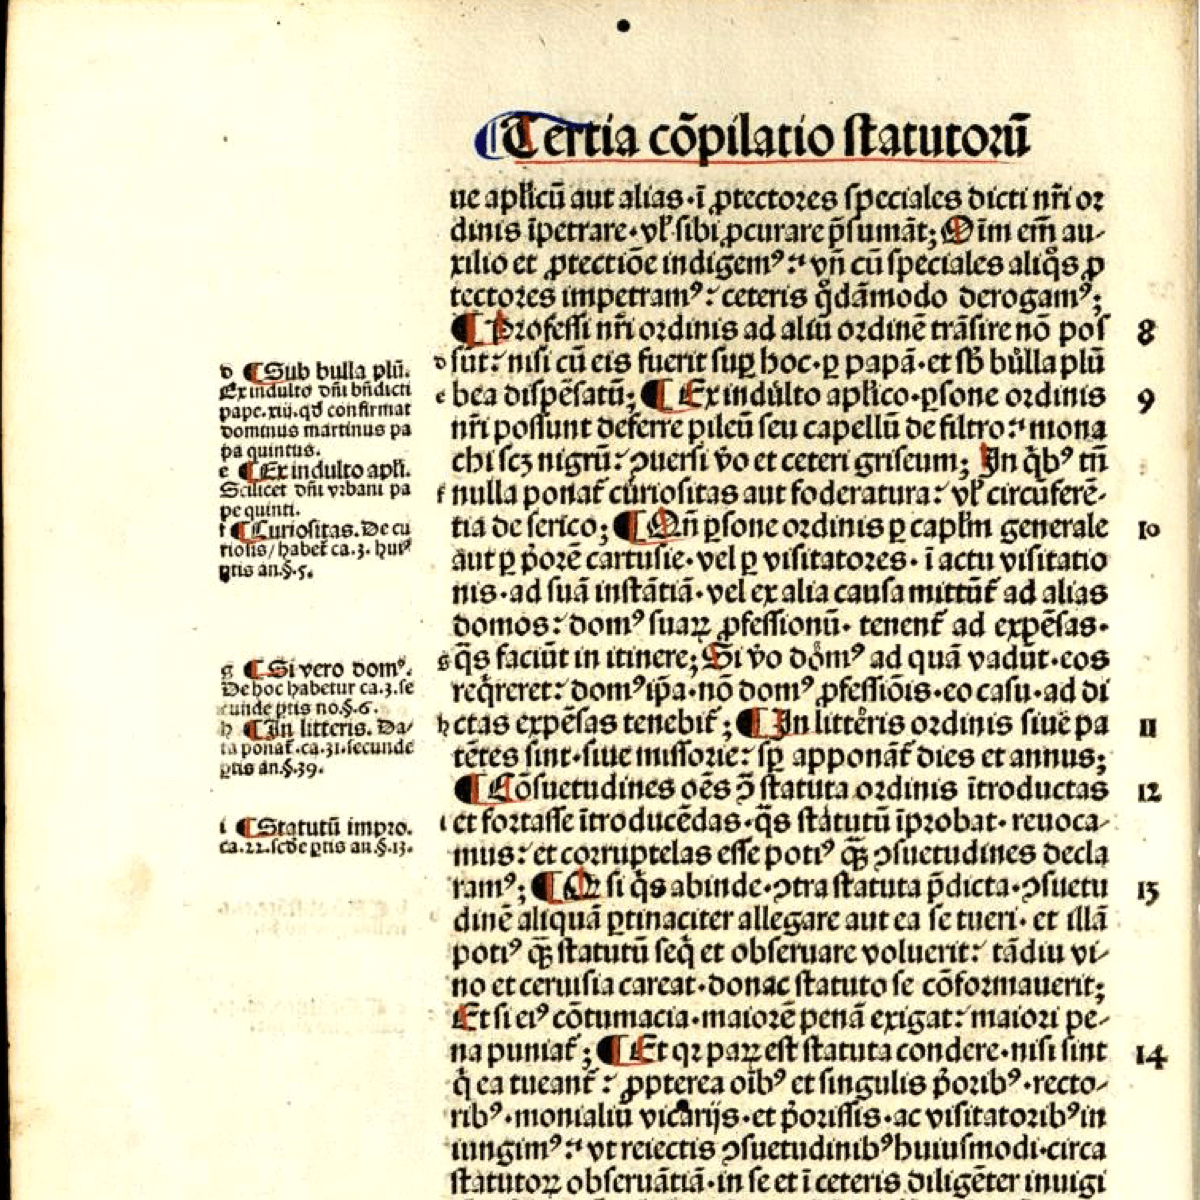 Ci-dessus, les Consuetudines Cartusiae (Coutumes de la Chartreuse), écrites et mises en forme par le frère prieur Guigues le Chartreux